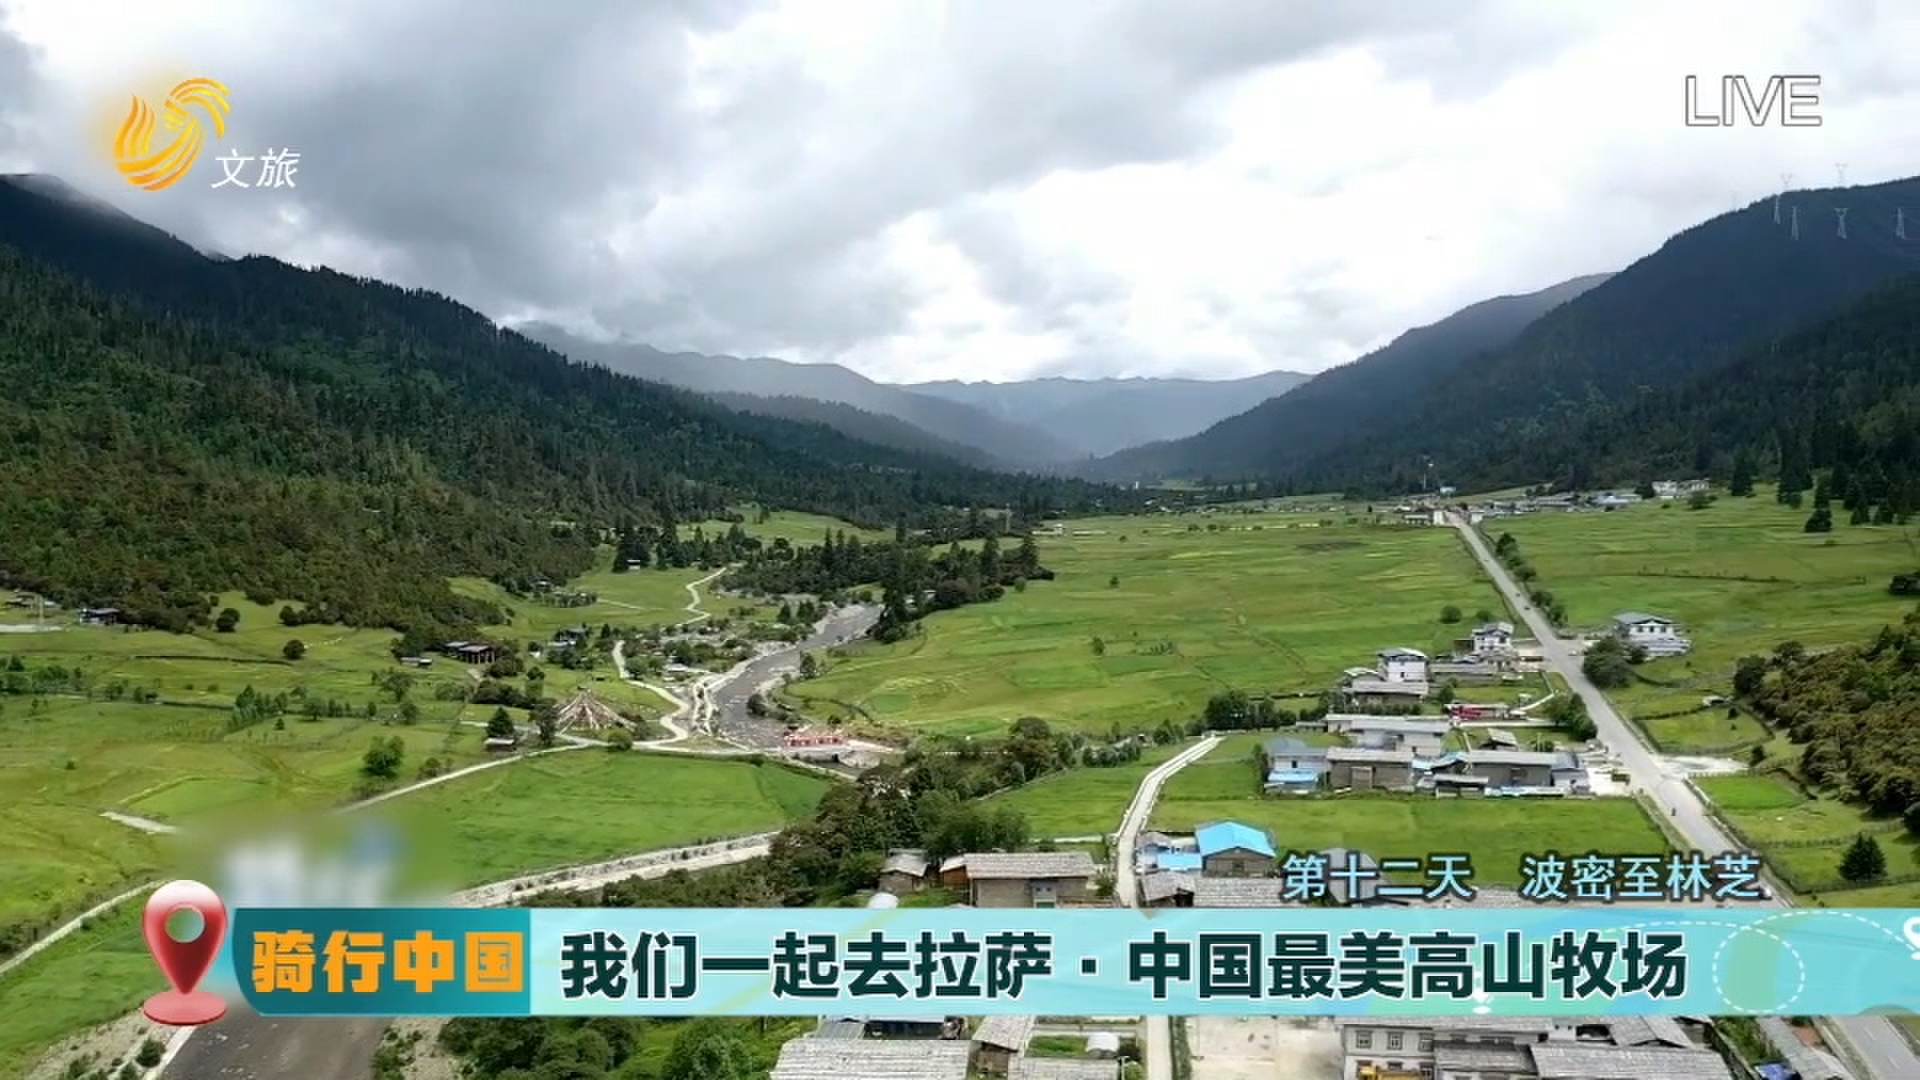 【骑行中国 看壮美山河】“我们一起去拉萨”·川藏线上的最美小镇